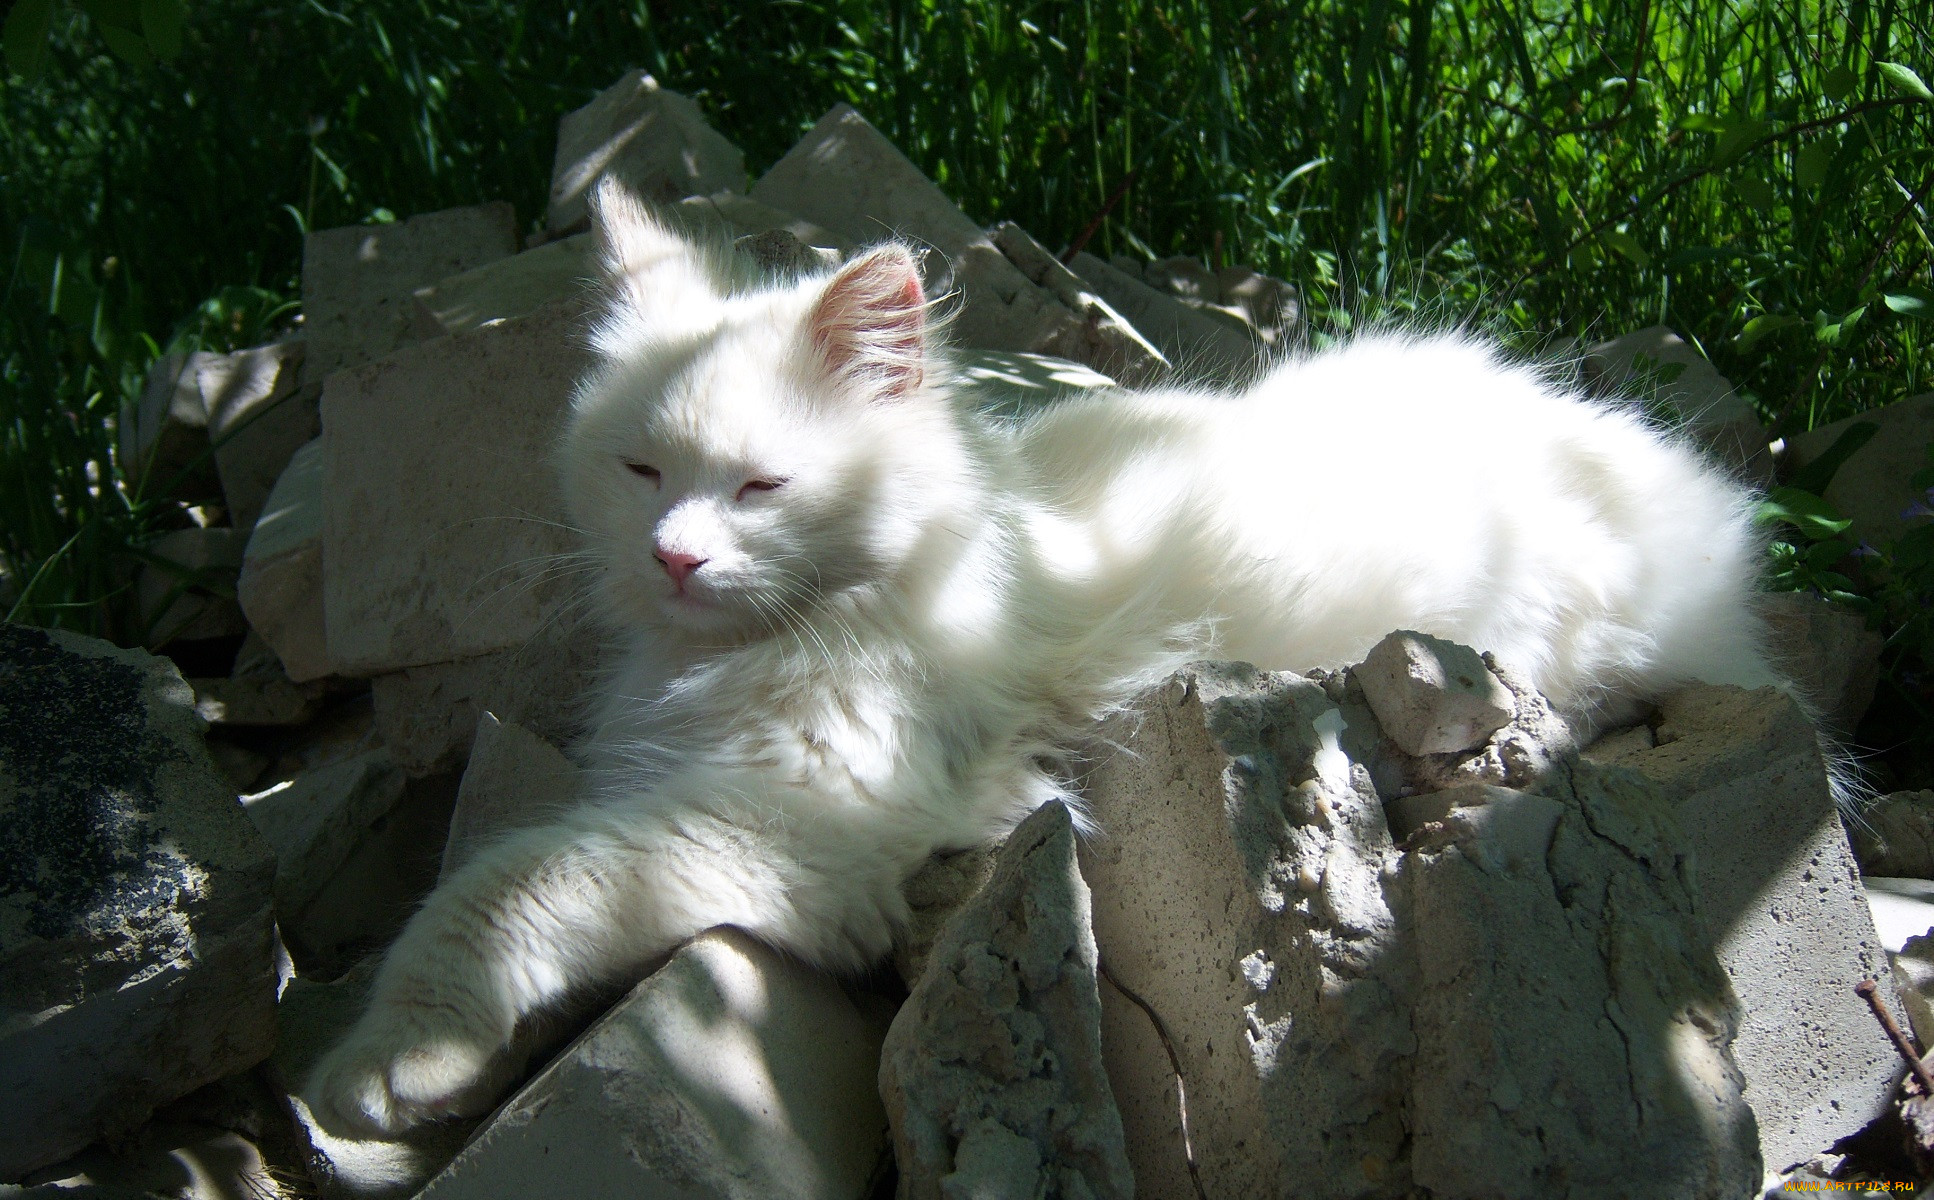 Кот дремот белый. Картик кот дремот. Кот дремот полный белый кот. Белый кот в траве. Кот дремот в реальной жизни